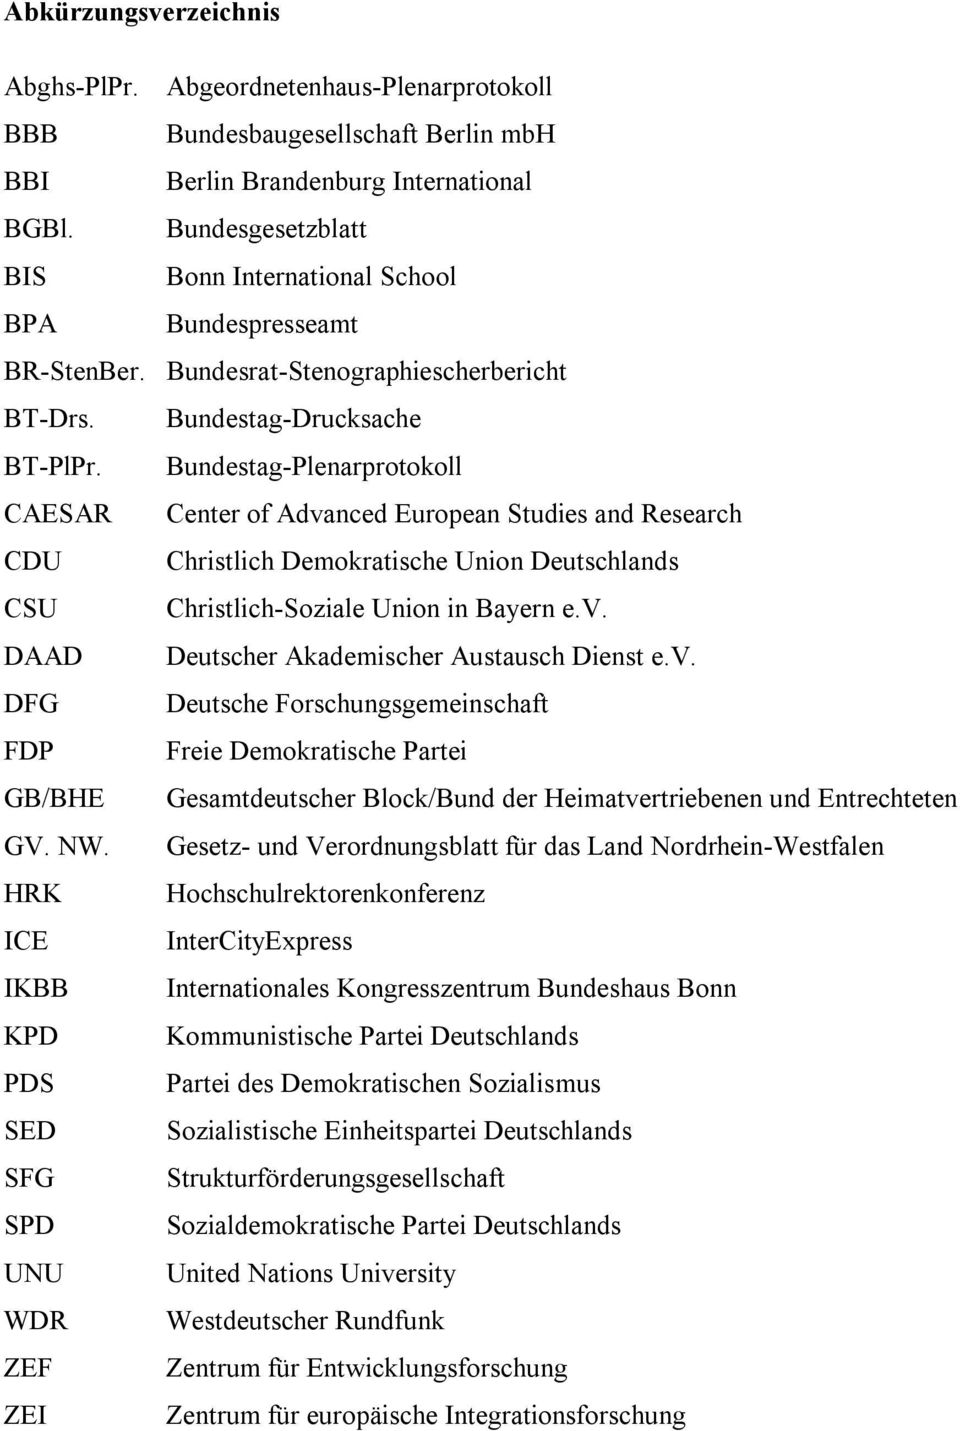 Bundestag-Plenarprotokoll CAESAR Center of Advanced European Studies and Research CDU Christlich Demokratische Union Deutschlands CSU Christlich-Soziale Union in Bayern e.v. DAAD Deutscher Akademischer Austausch Dienst e.